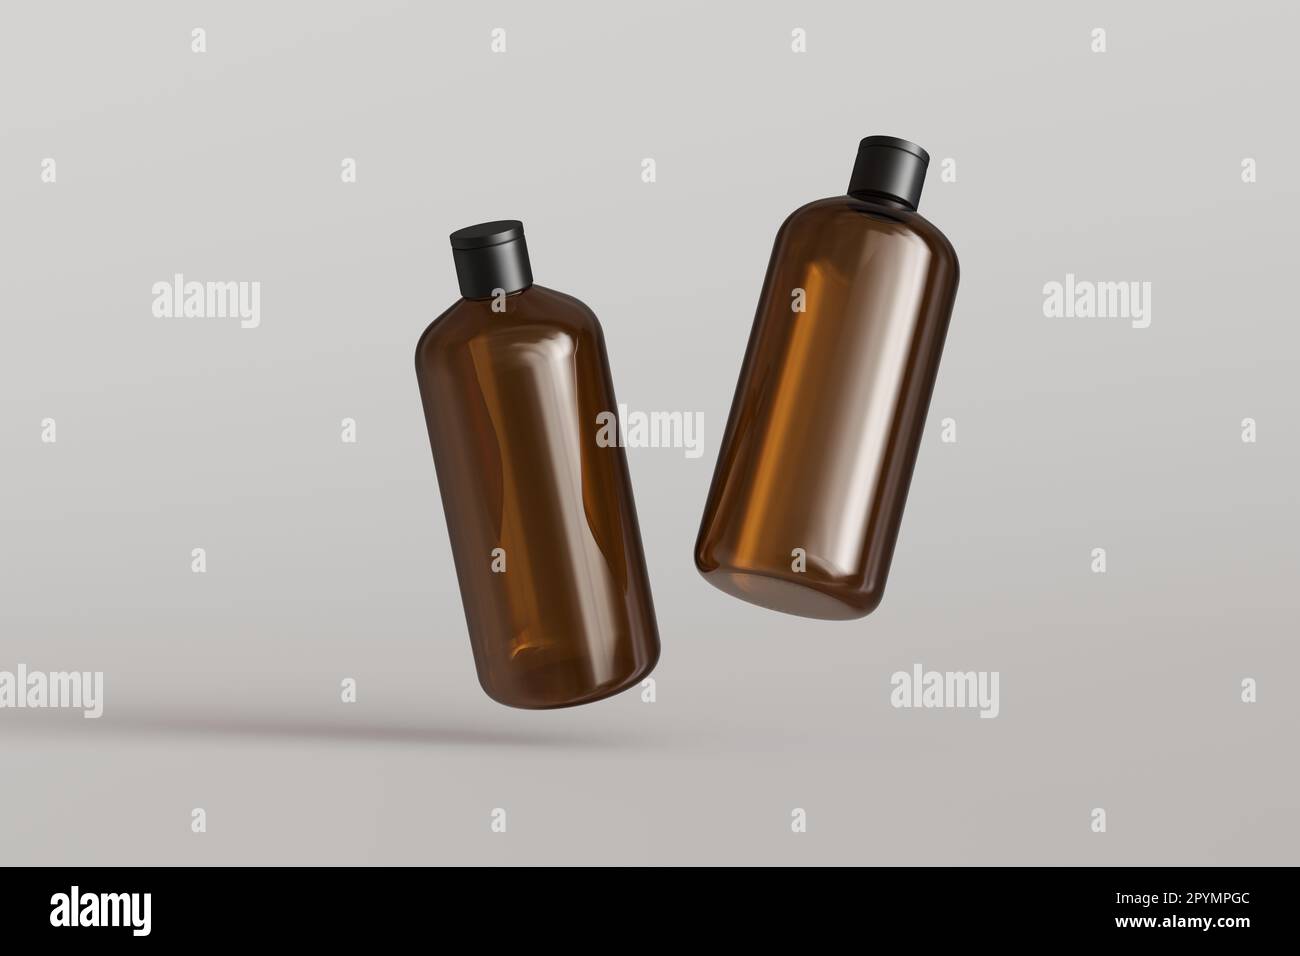 Zwei braune Kunststoffbehälter für Kosmetikartikel, Shampooflaschen schwebend auf grauem Hintergrund Vorderansicht 3D-Modell rendern Stockfoto